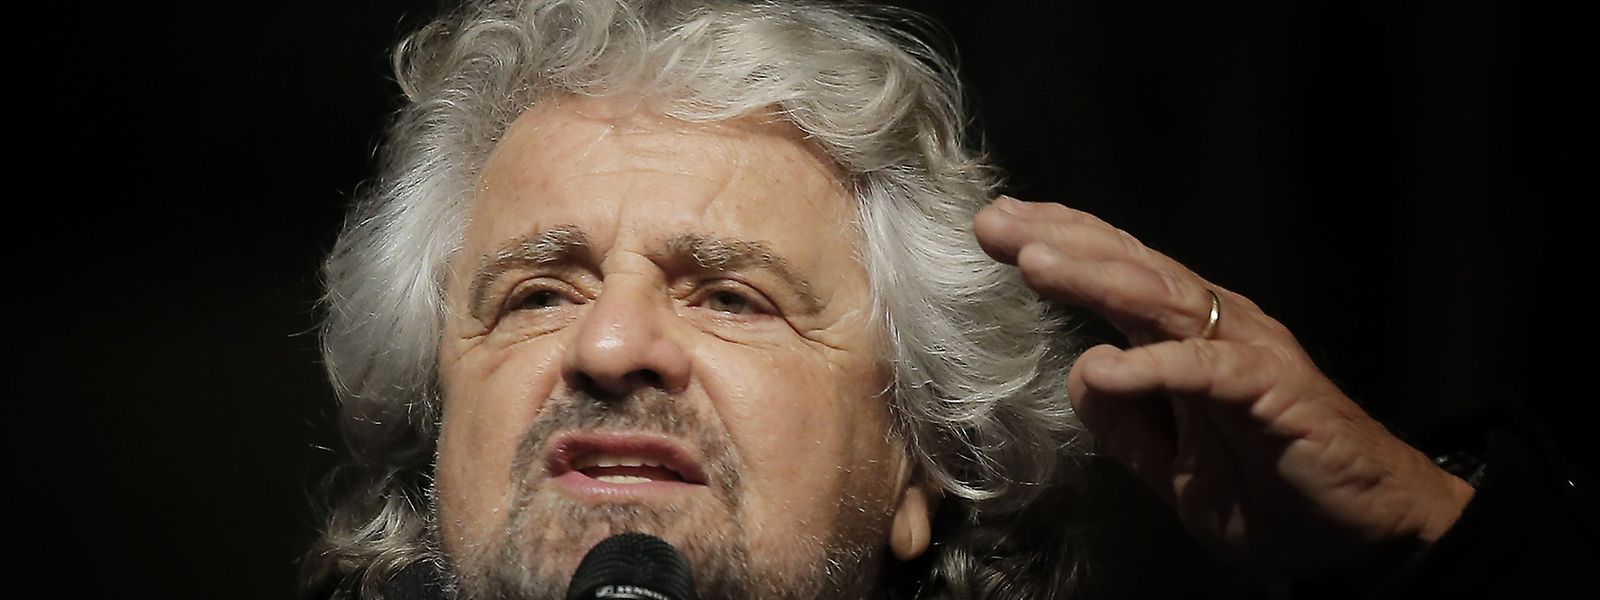 Beppe Grillo, Anführer der "Fünf-Sterne-Bewegung", sieht seine Partei als großen Gewinner der Wahl